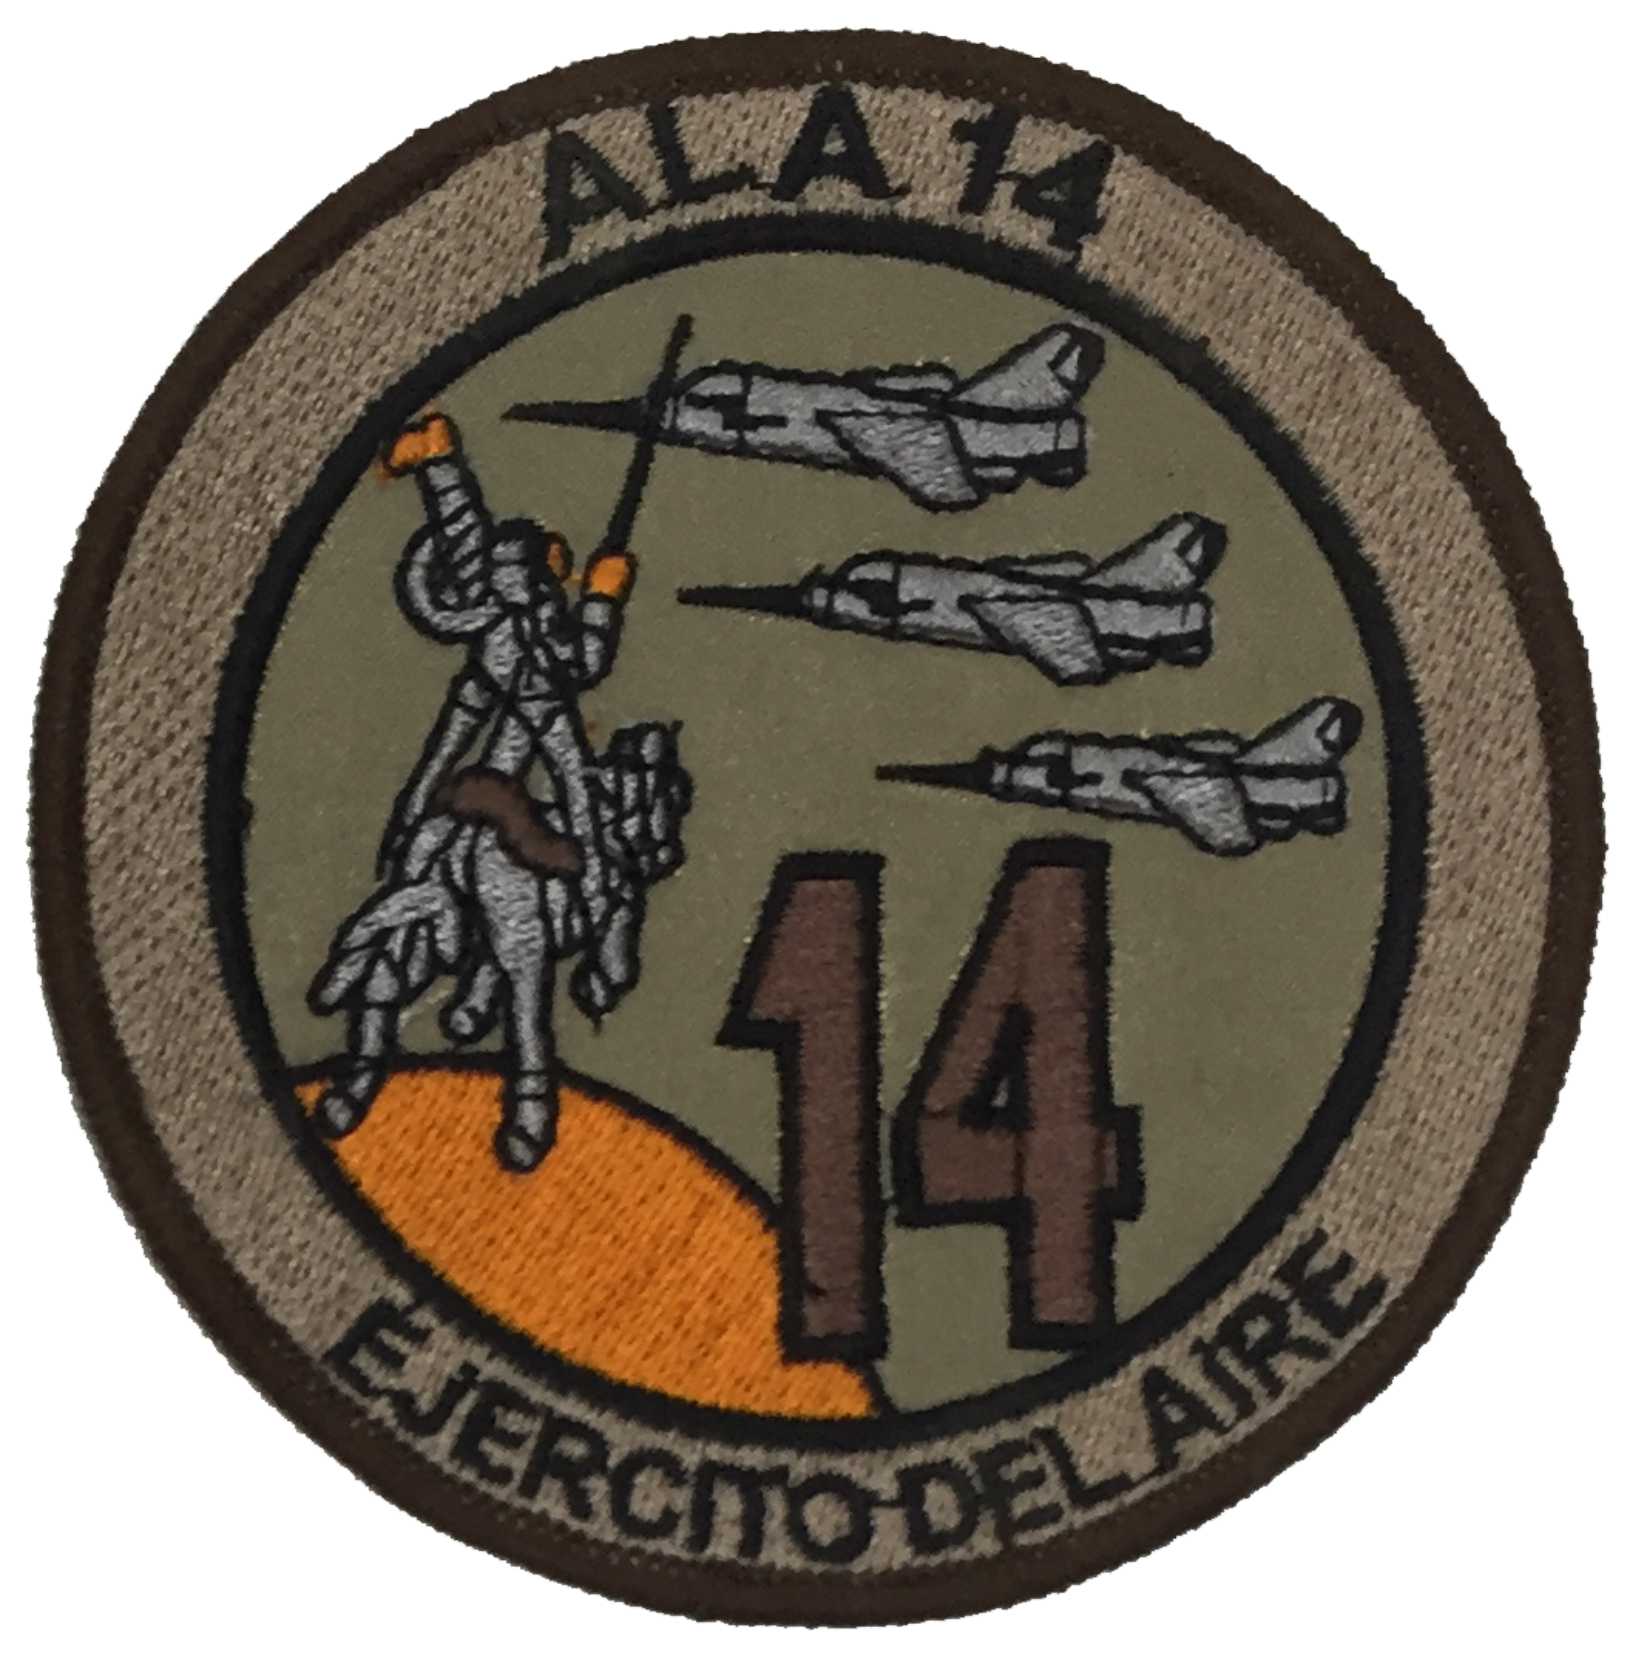 Escudo bordado Ala 14 Árido (desierto) Base Aérea de Albacete